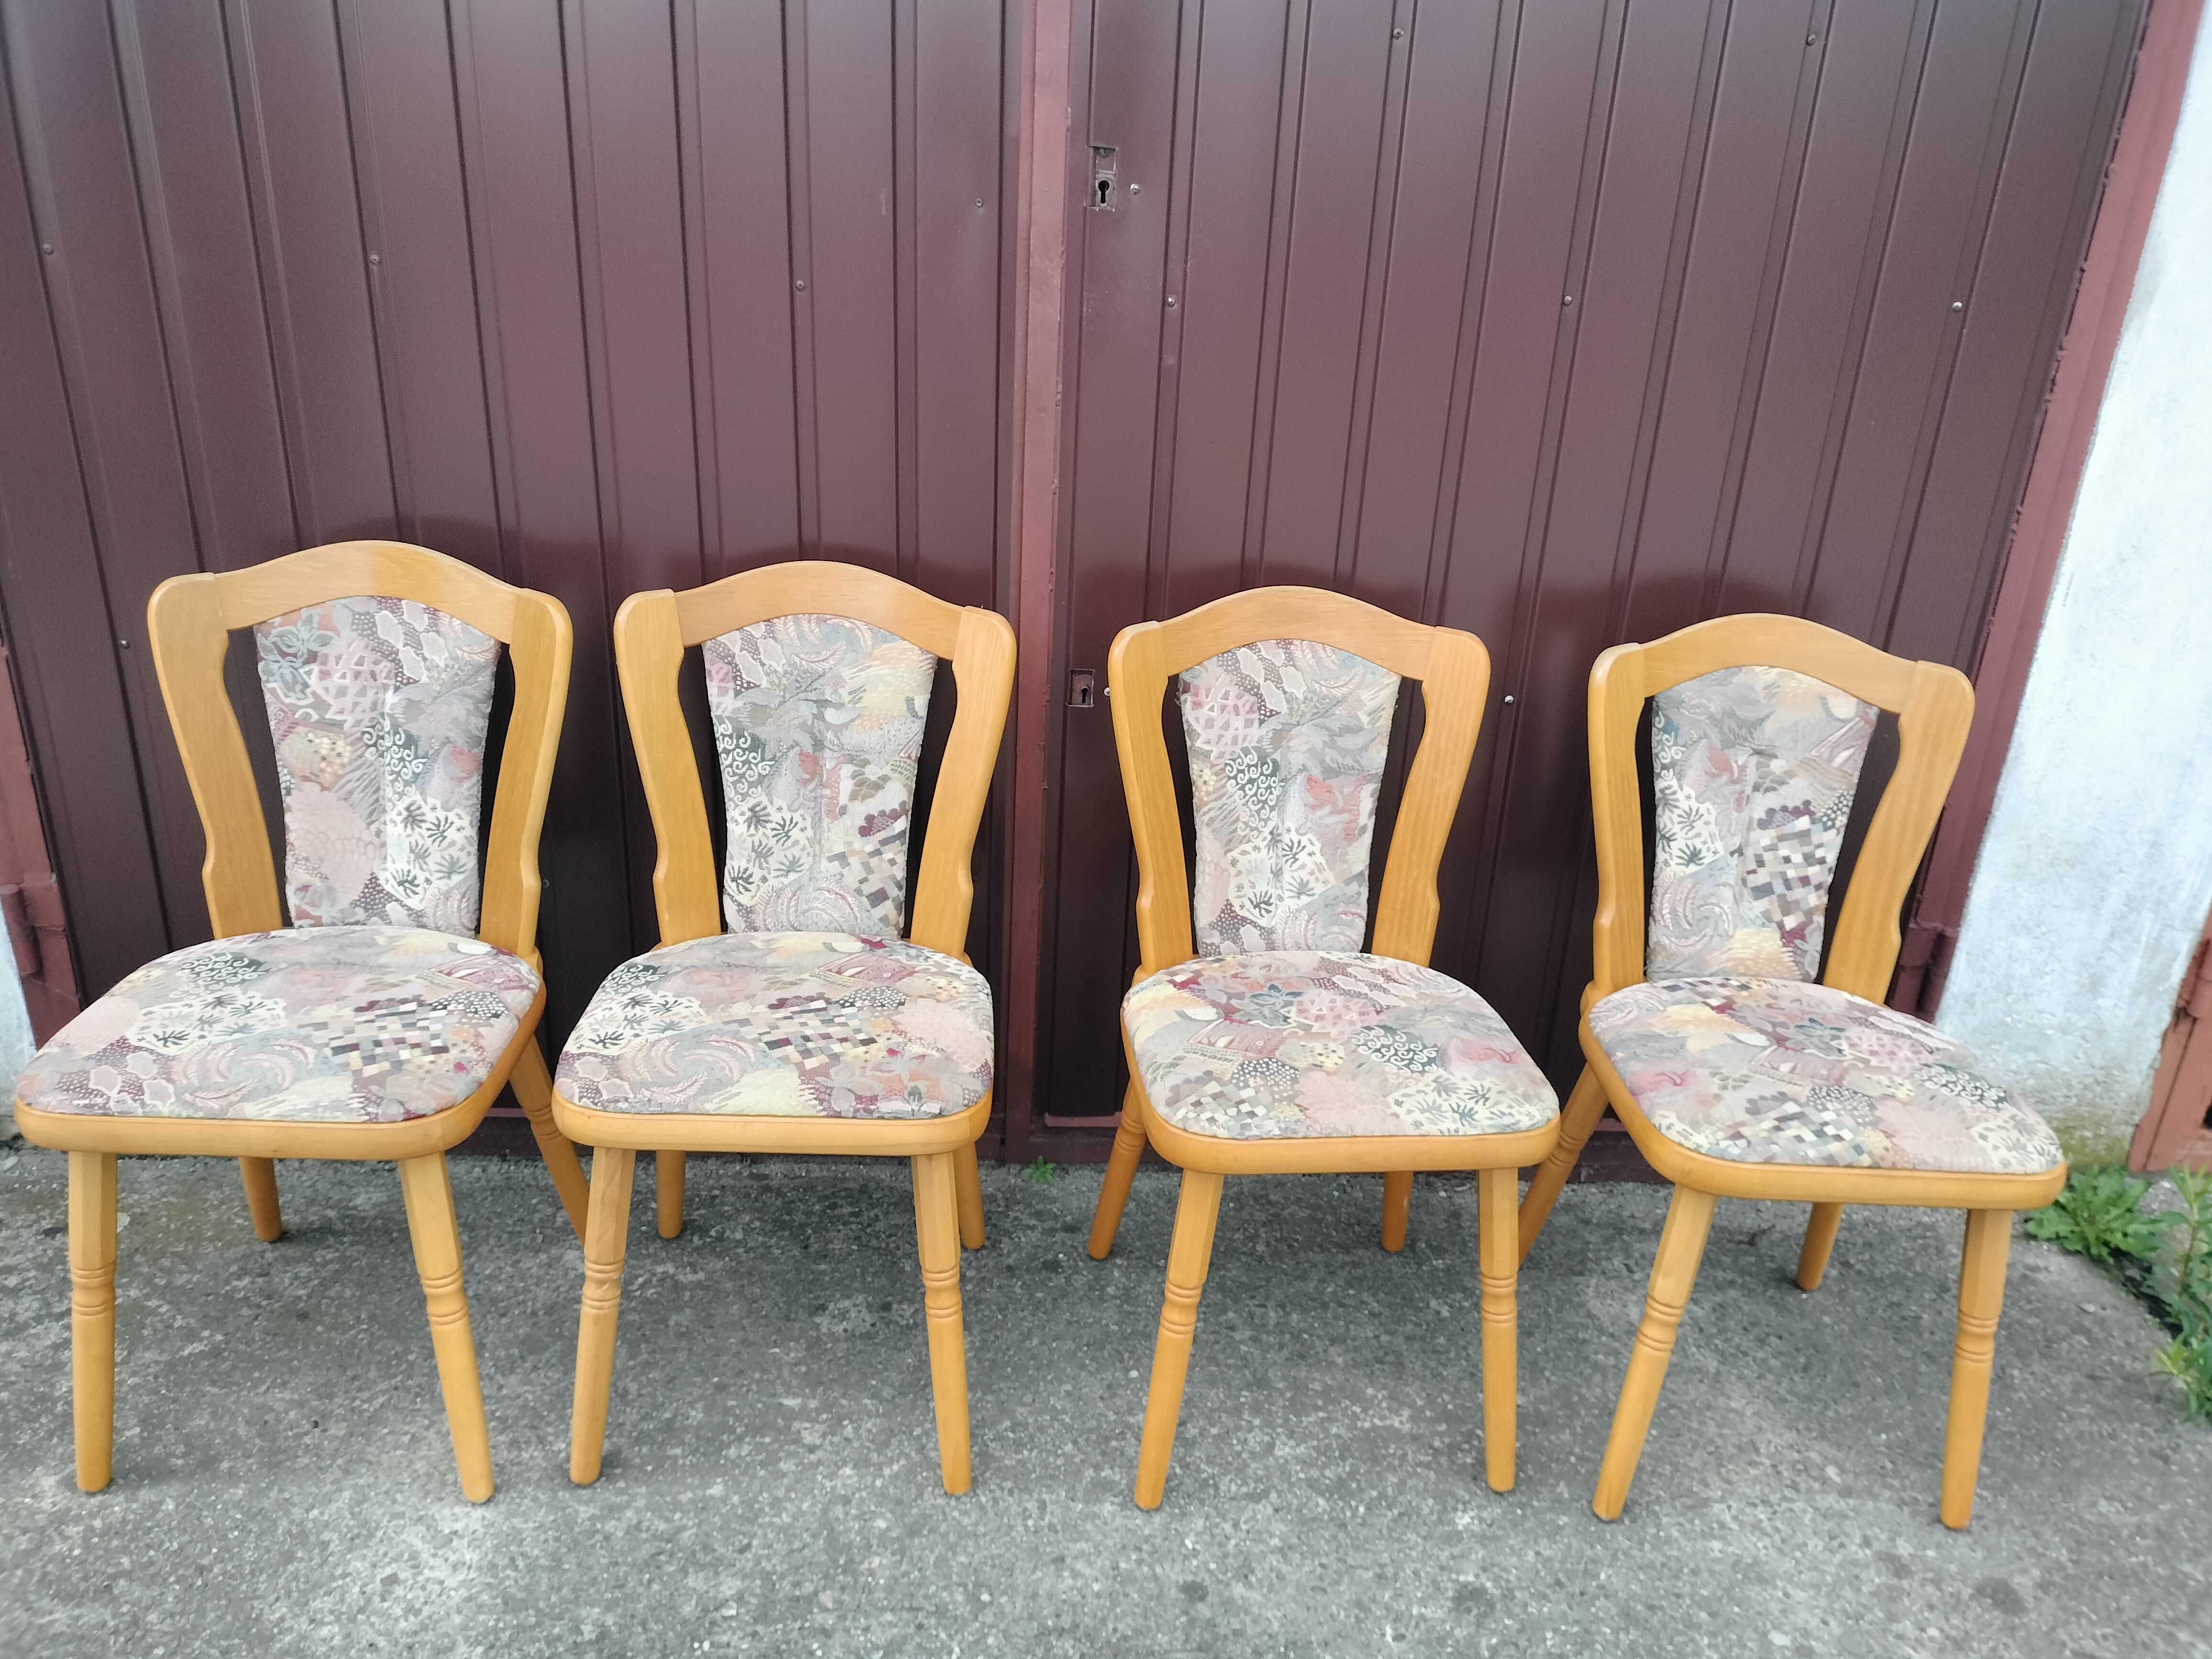 4 porządne drewniane krzesła dębowe